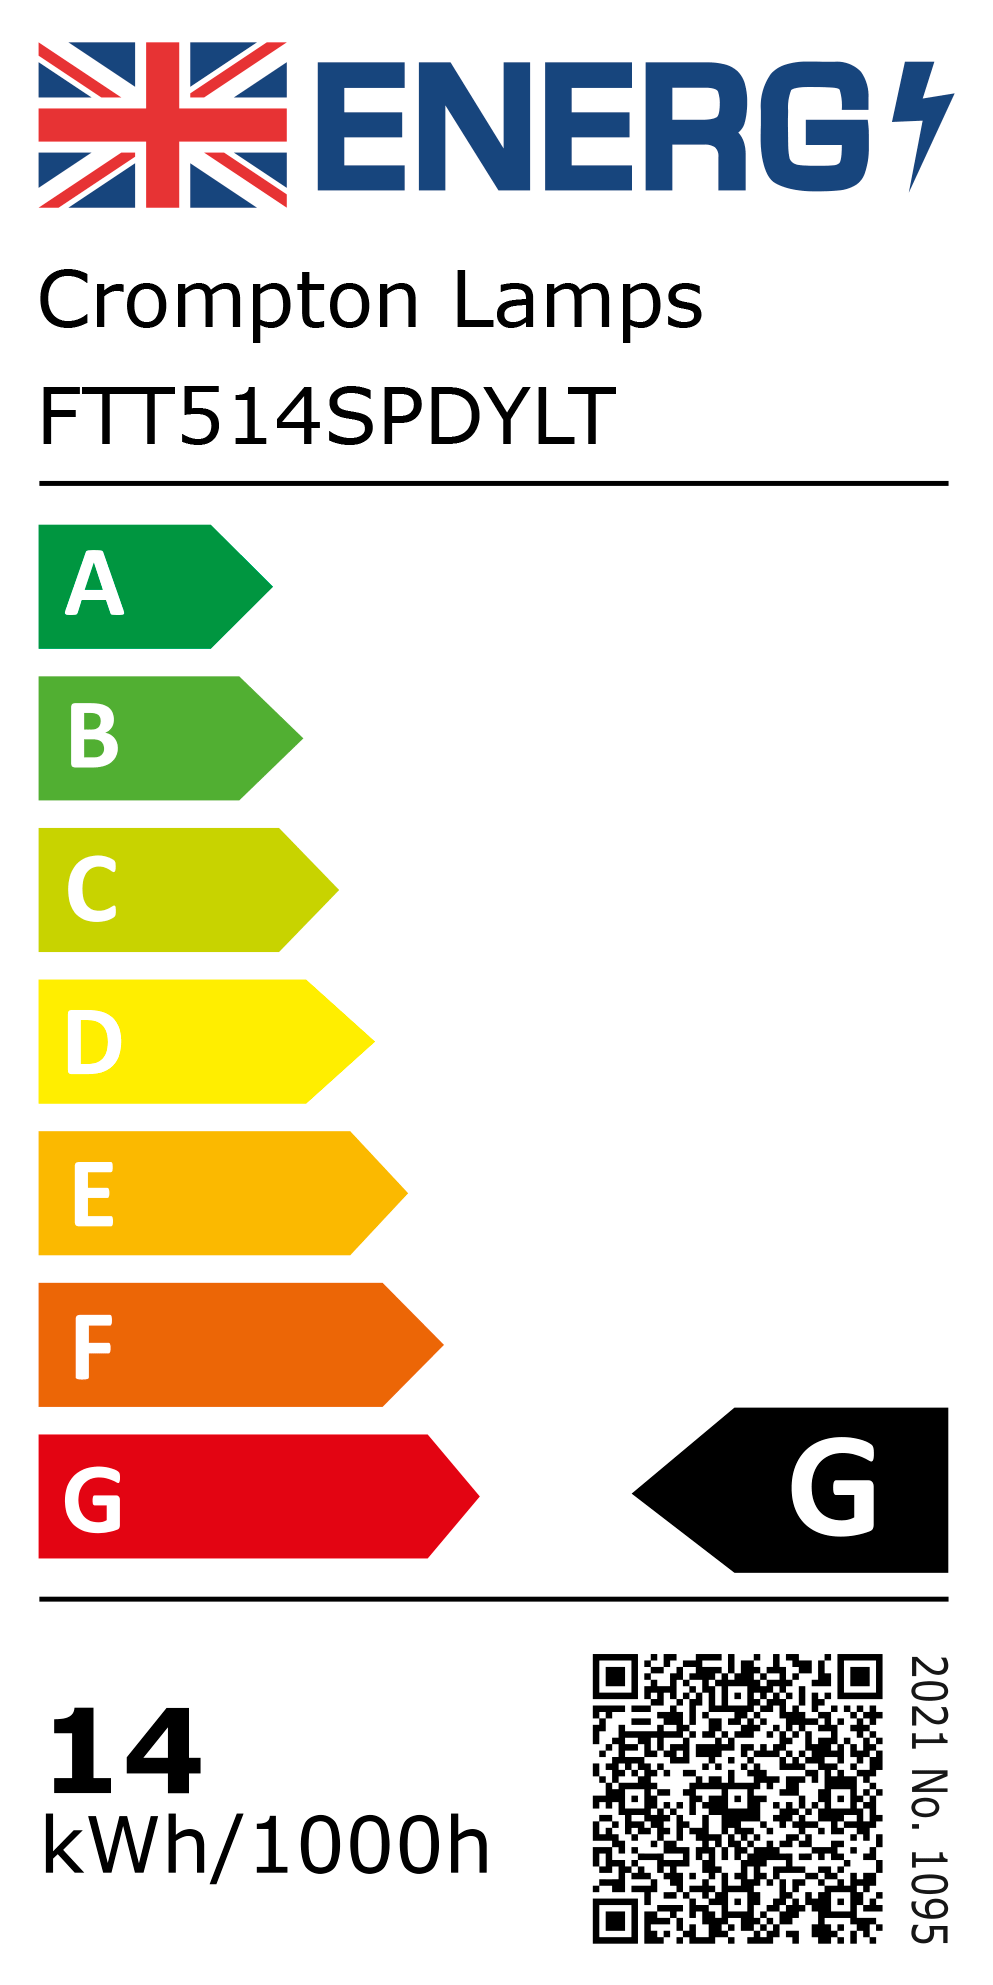 New 2021 Energy Rating Label: Stock Code FTT514SPDYLT